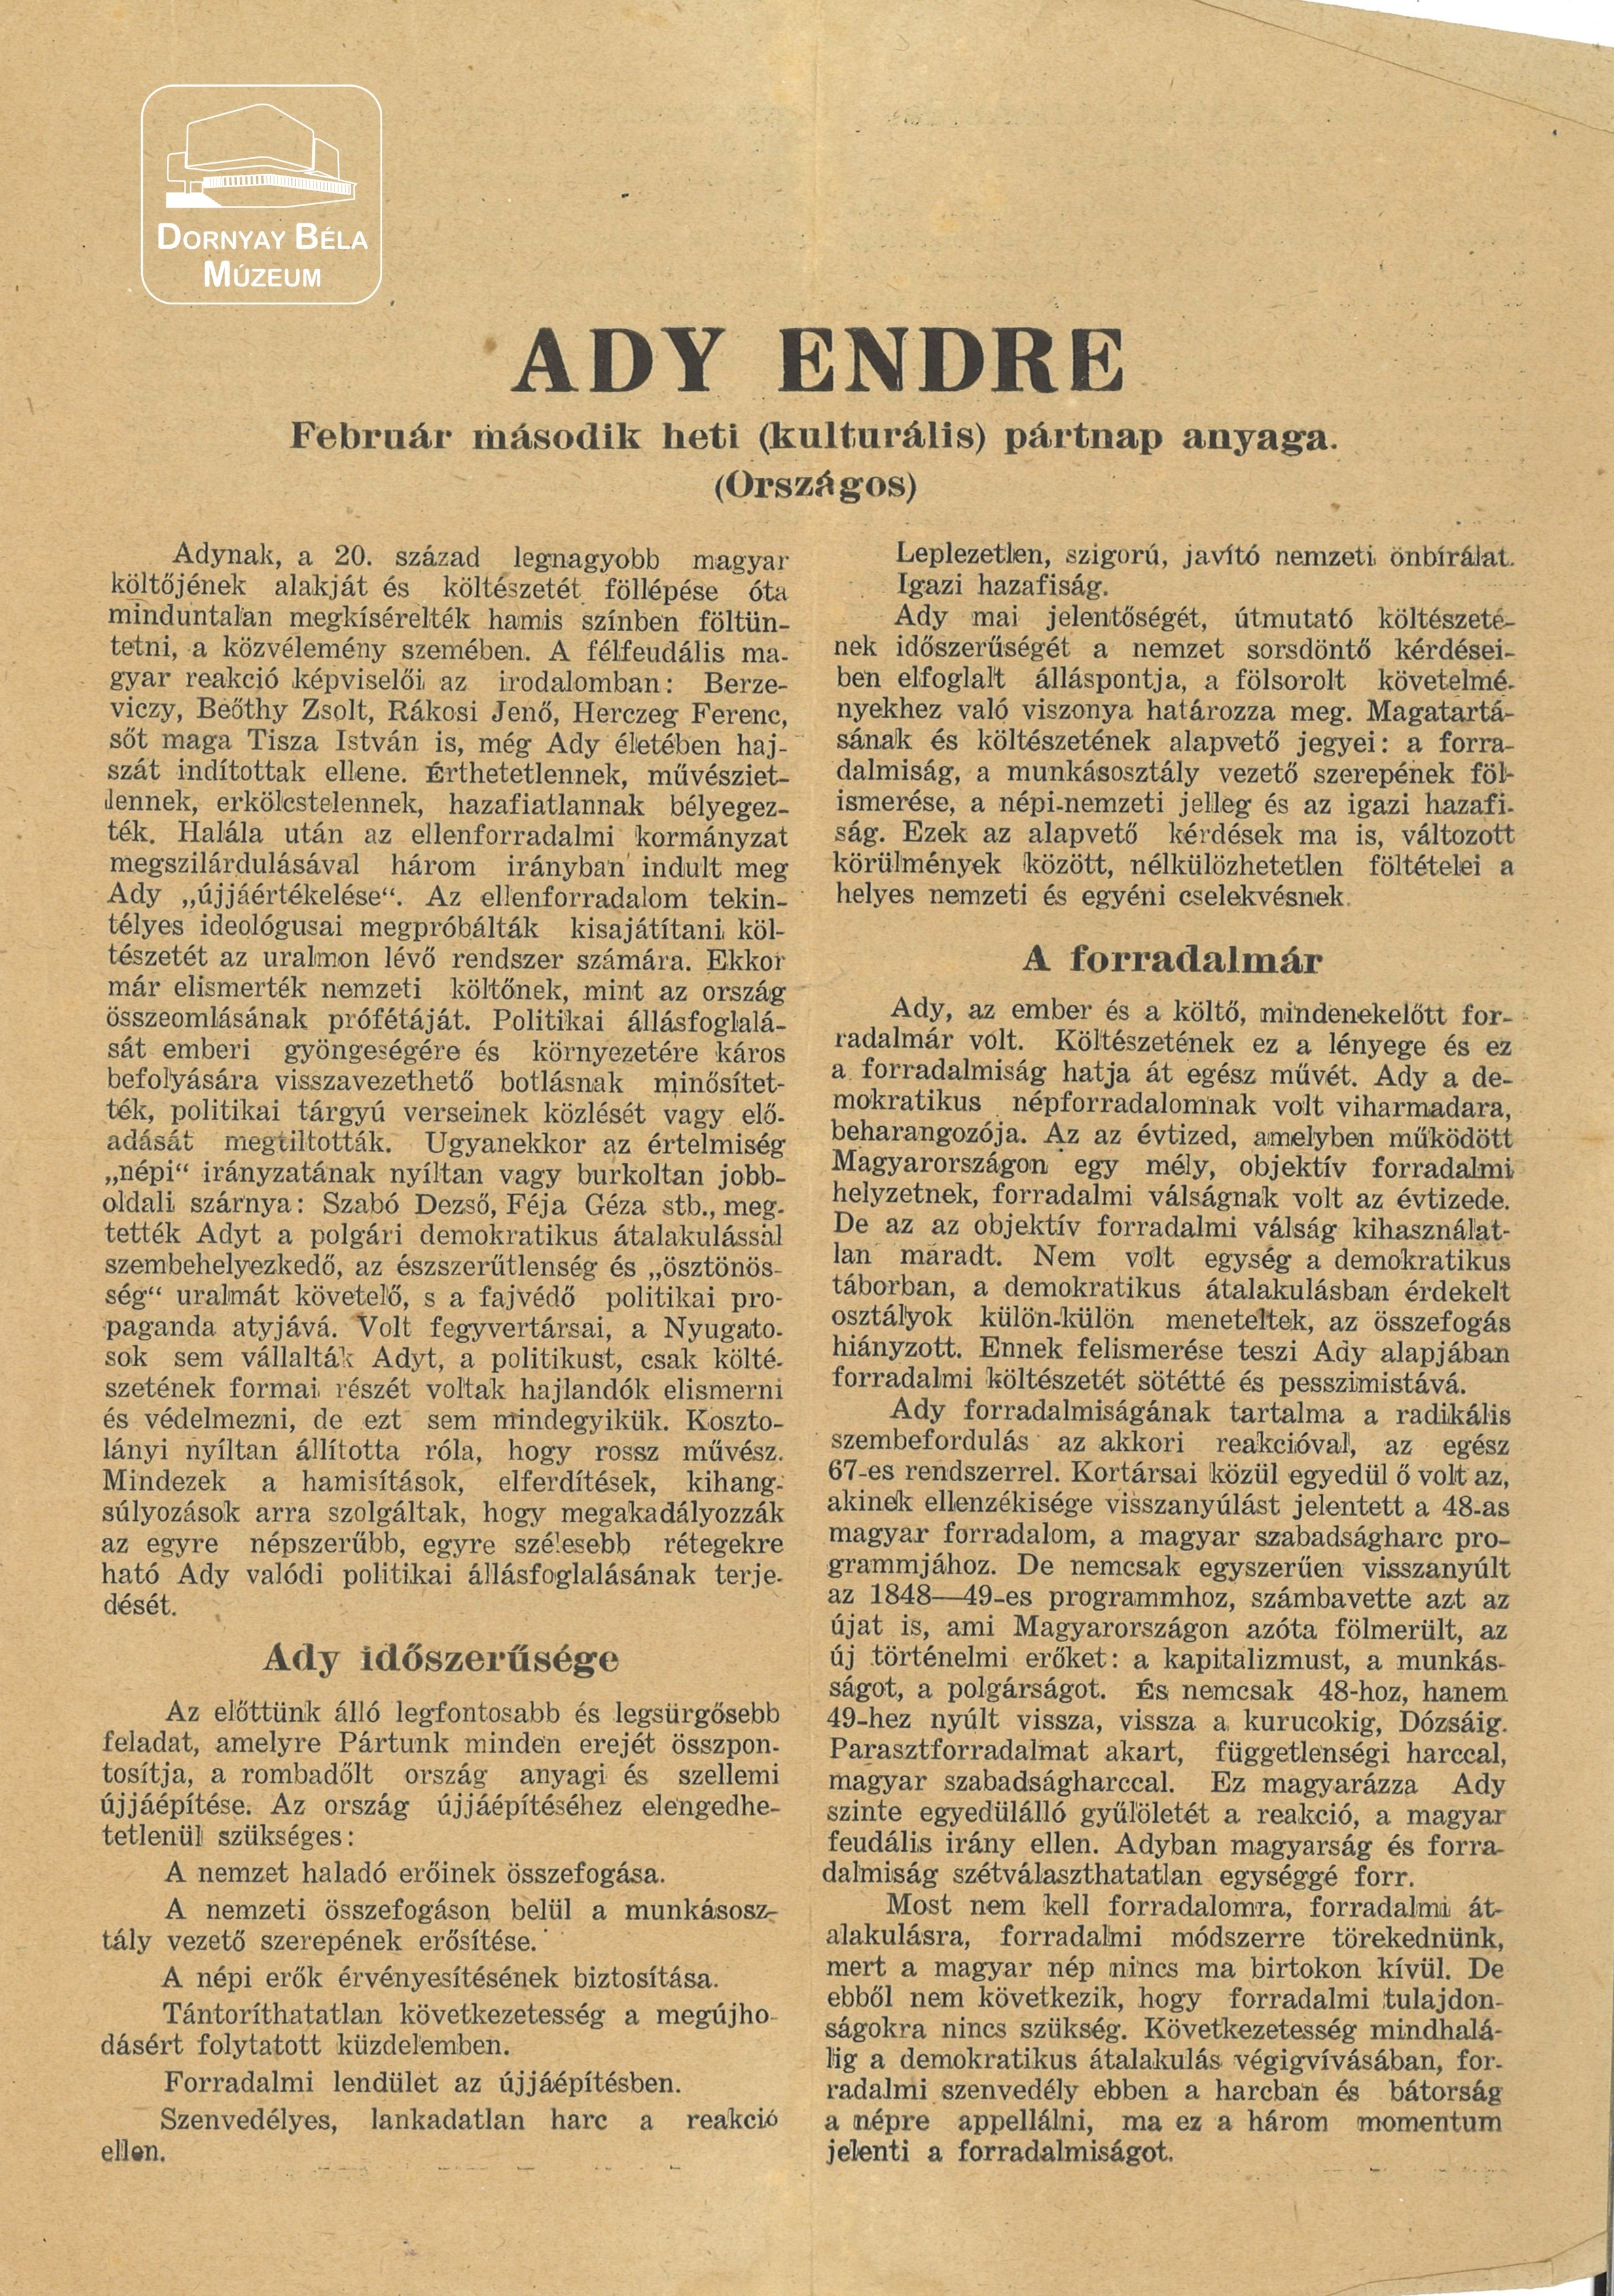 Ady Endre. Február második heti (kulturális) pártnap anyaga. (Dornyay Béla Múzeum, Salgótarján CC BY-NC-SA)